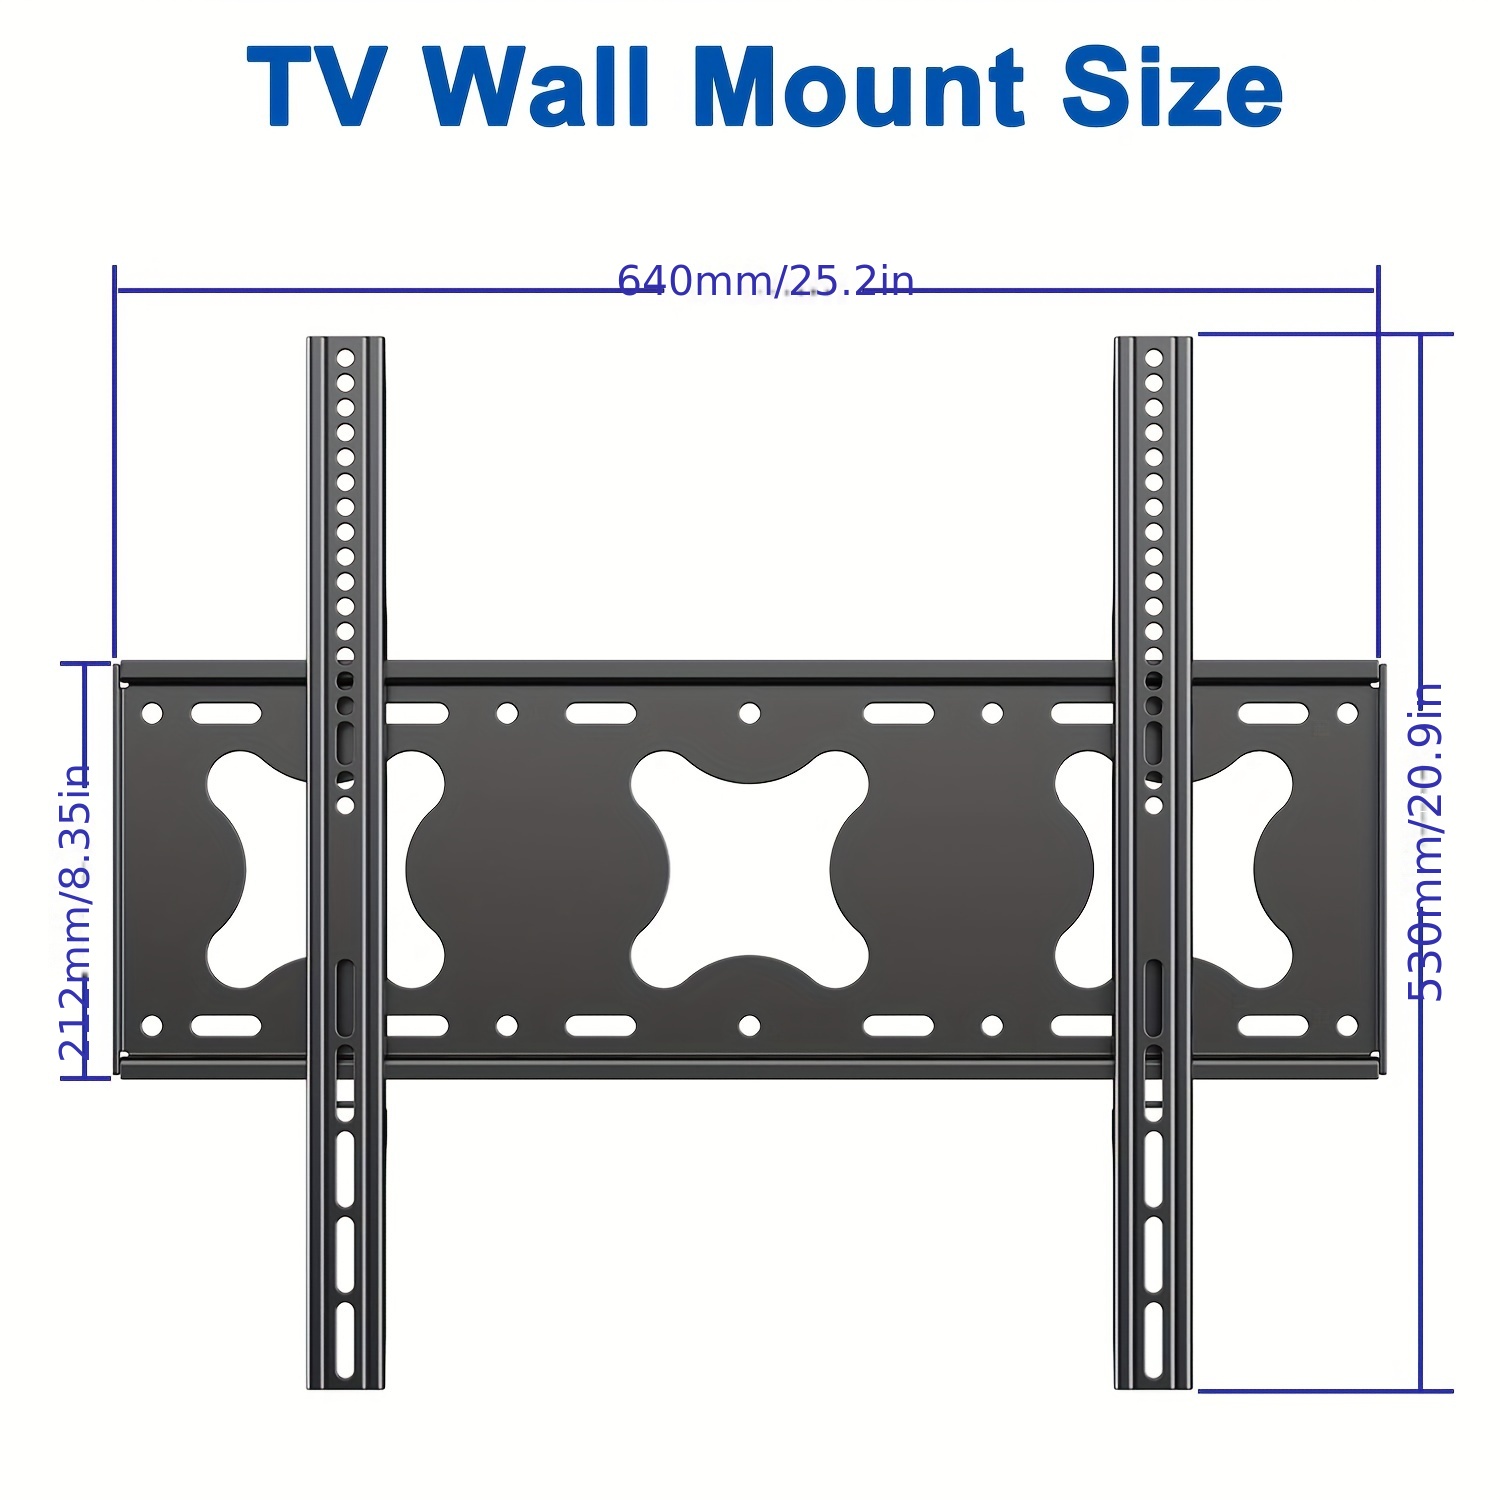  TETVIK Soporte de pared para TV de 42 a 85 pulgadas LED LCD  OLED Plasma Plasma Plasma Inclinado Soporte de Pared, VESA hasta  29.528x19.685 in y carga de 220 libras, se